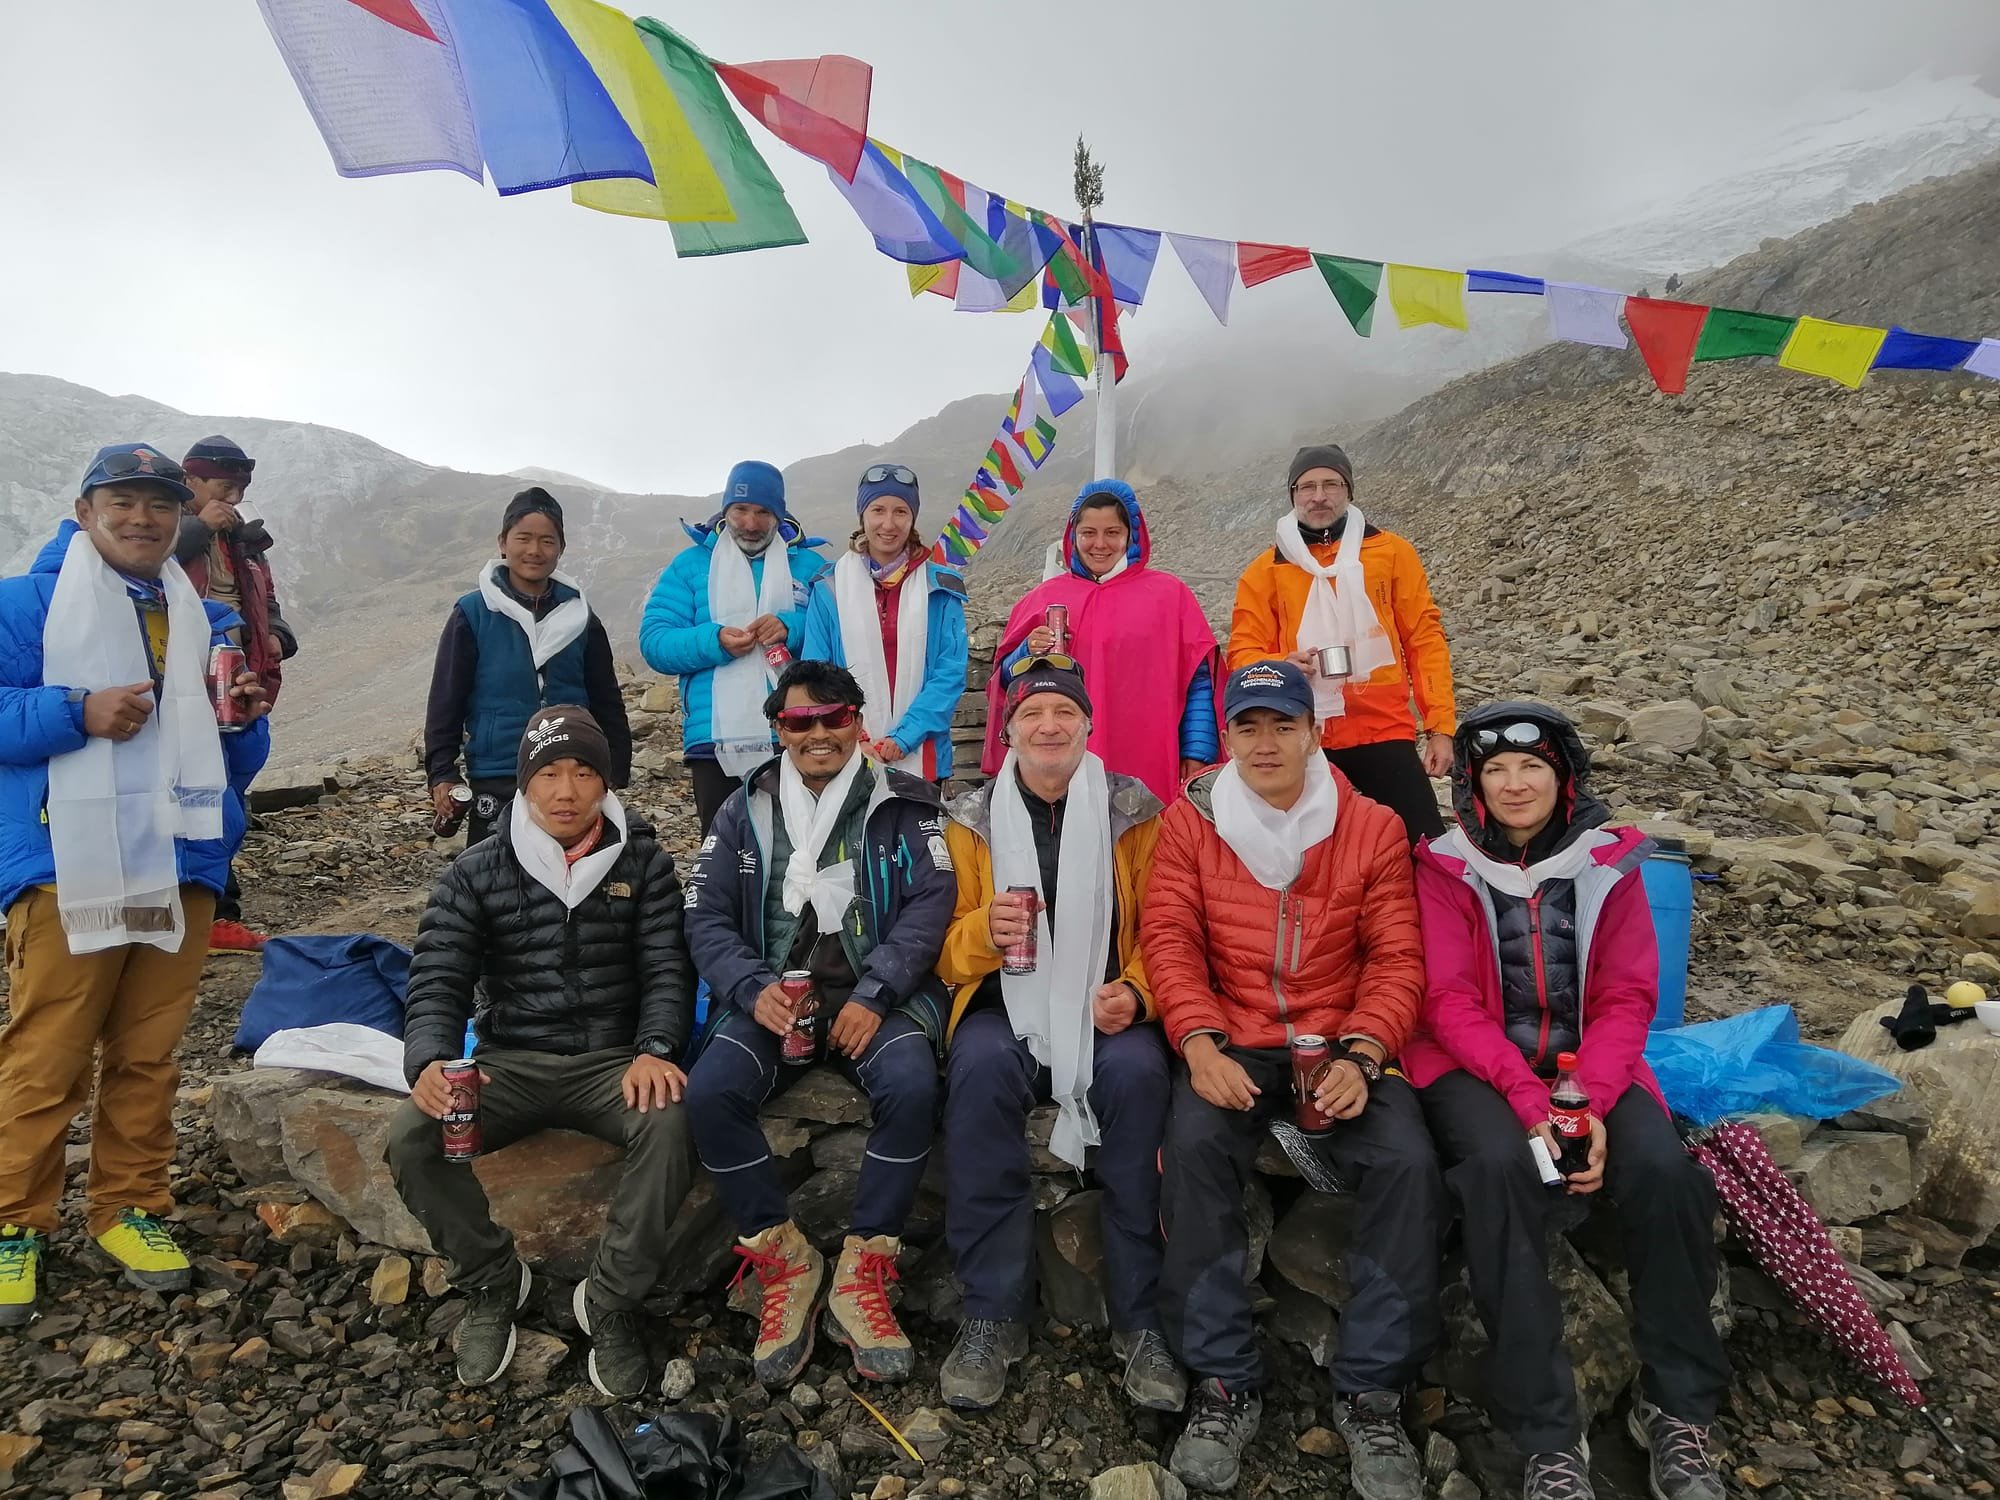 Manaslu 8163 expedition 2019